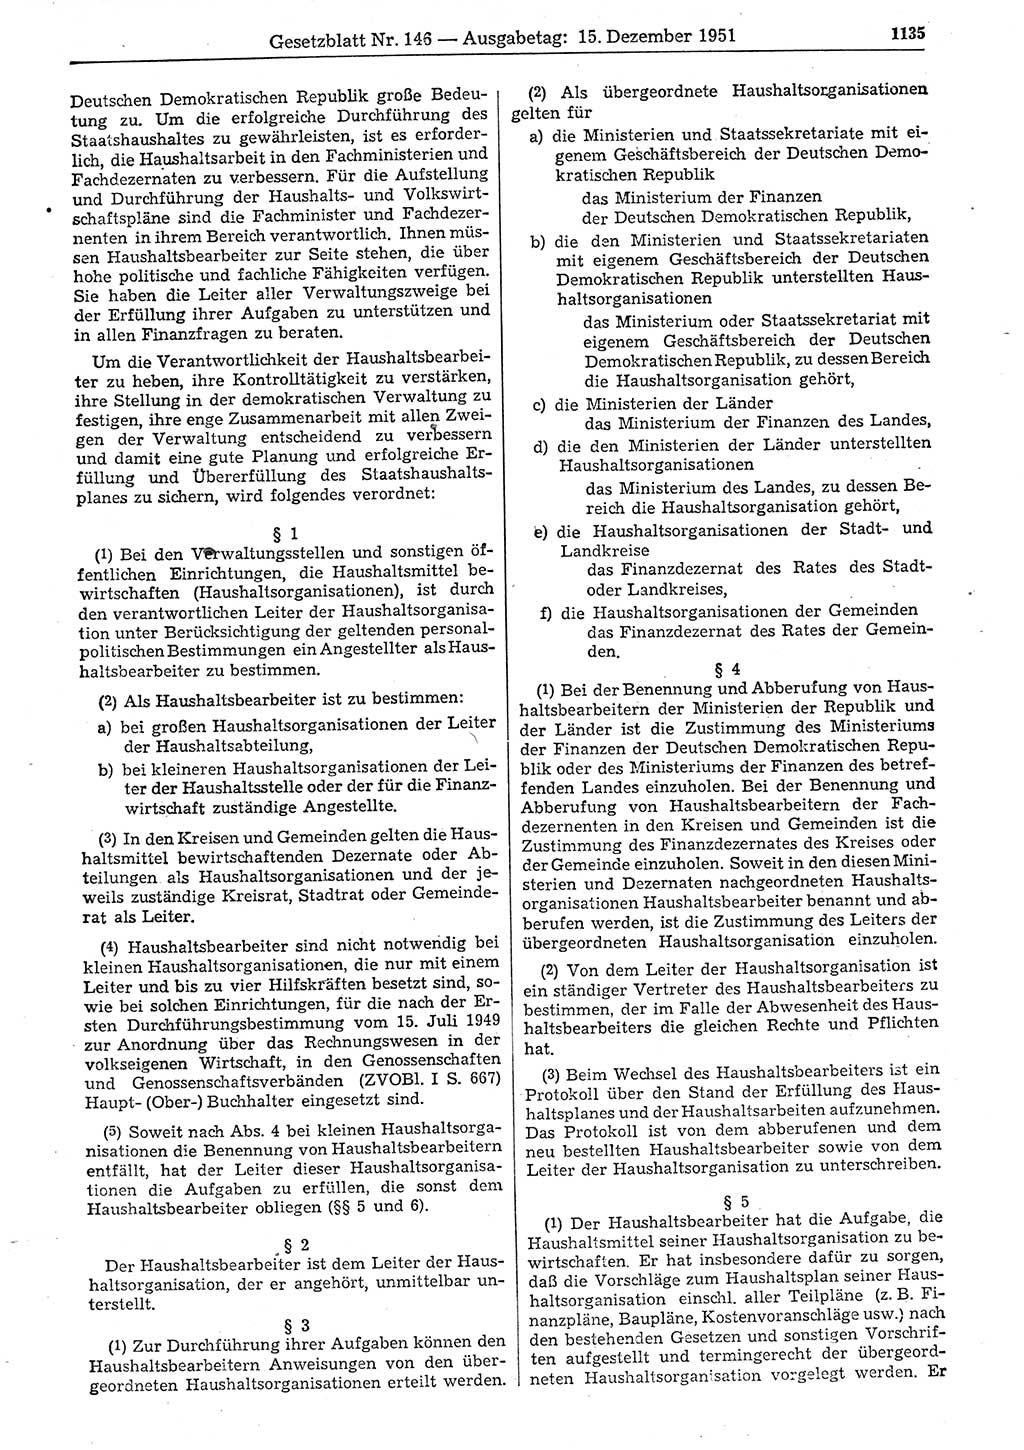 Gesetzblatt (GBl.) der Deutschen Demokratischen Republik (DDR) 1951, Seite 1135 (GBl. DDR 1951, S. 1135)